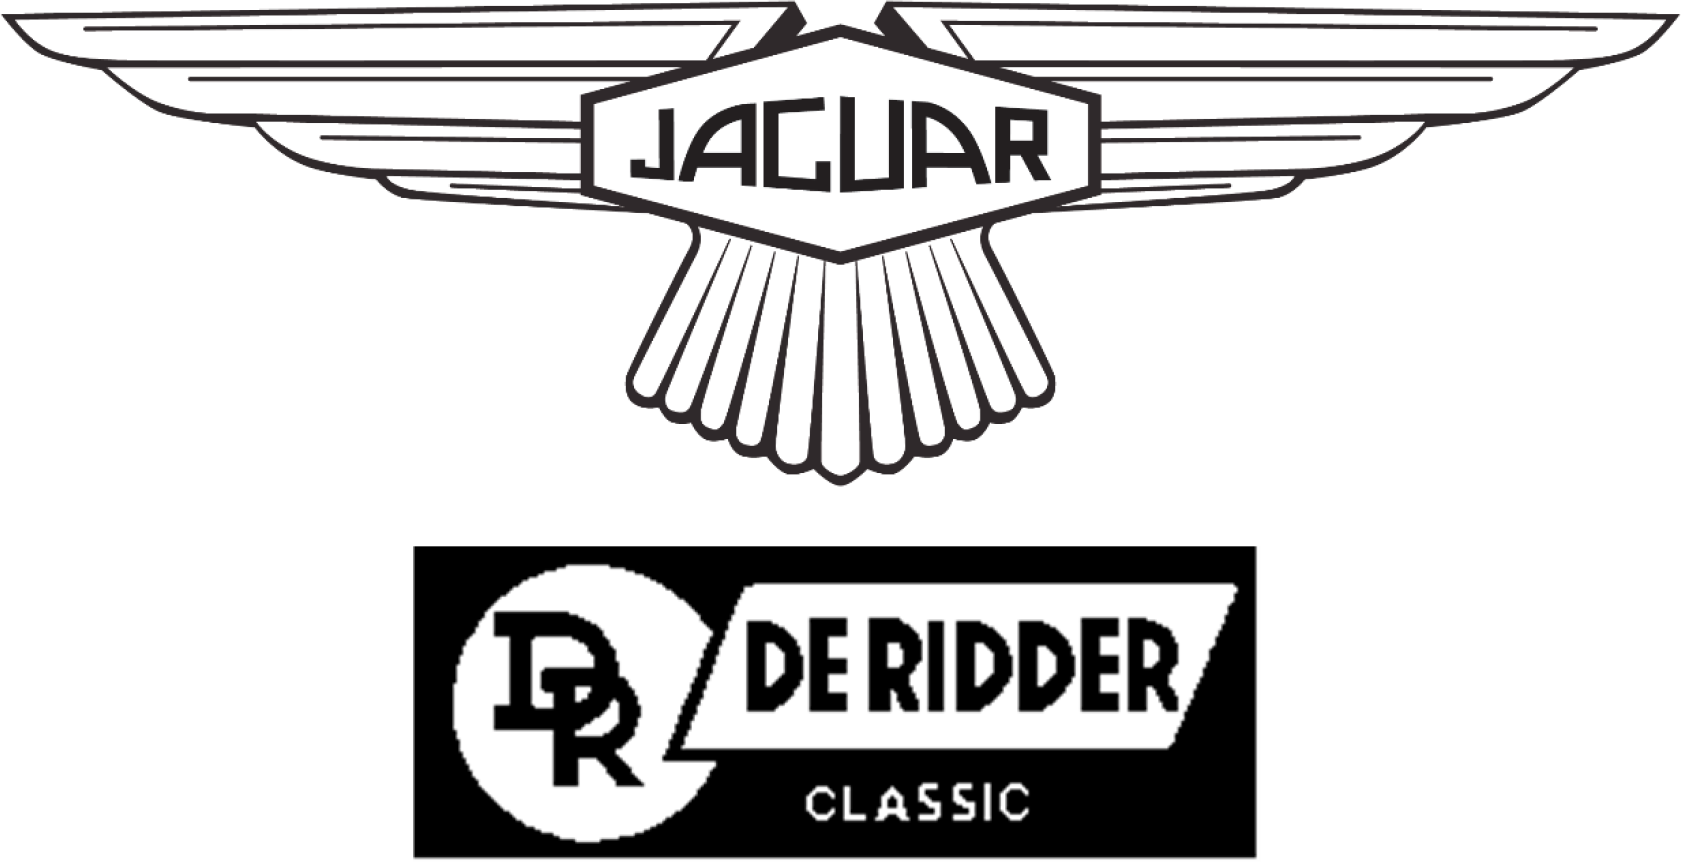 De Ridder Classic navbar logo